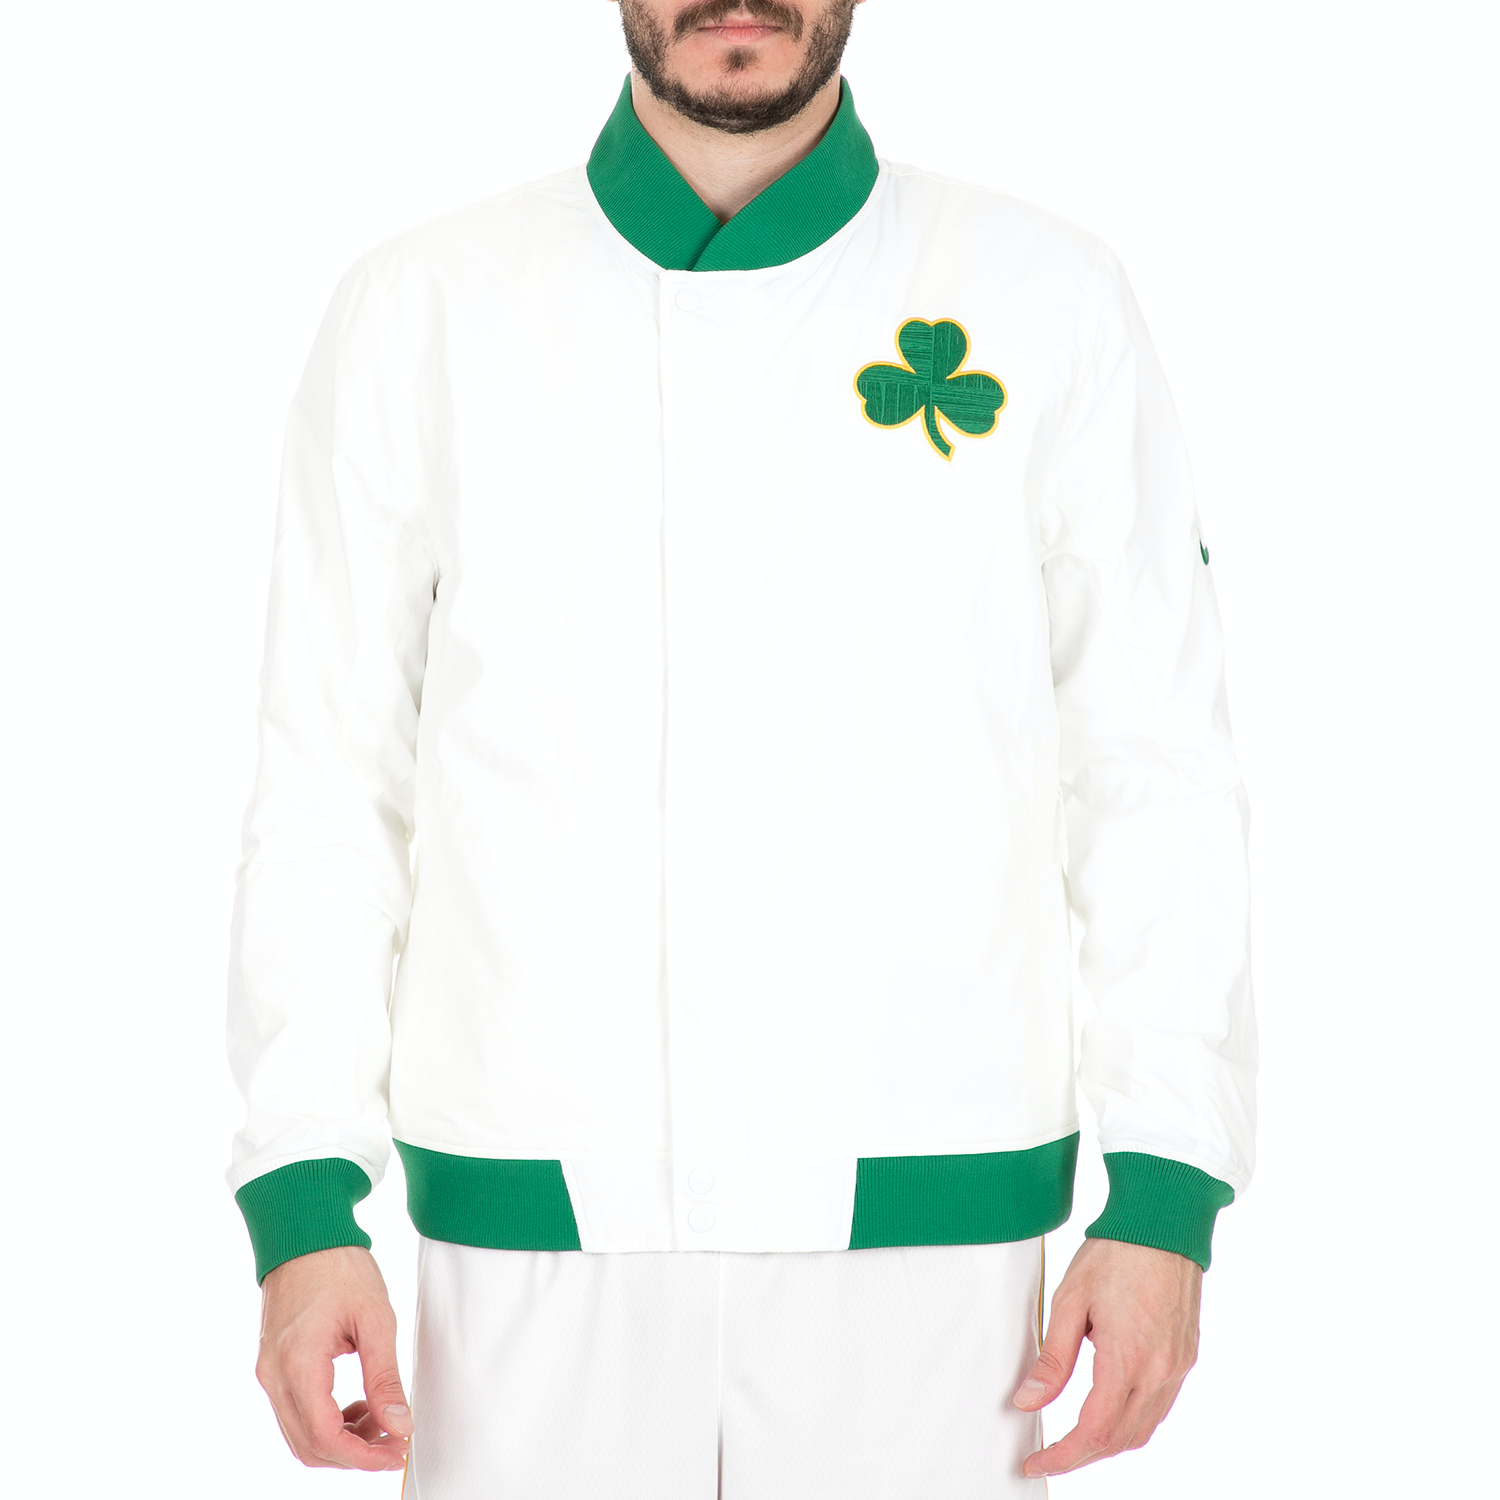 Ανδρικά/Ρούχα/Πανωφόρια/Μπουφάν NIKE - Ανδρικό τζάκετ NIKE NBA Boston Celtics COURTSIDE λευκό